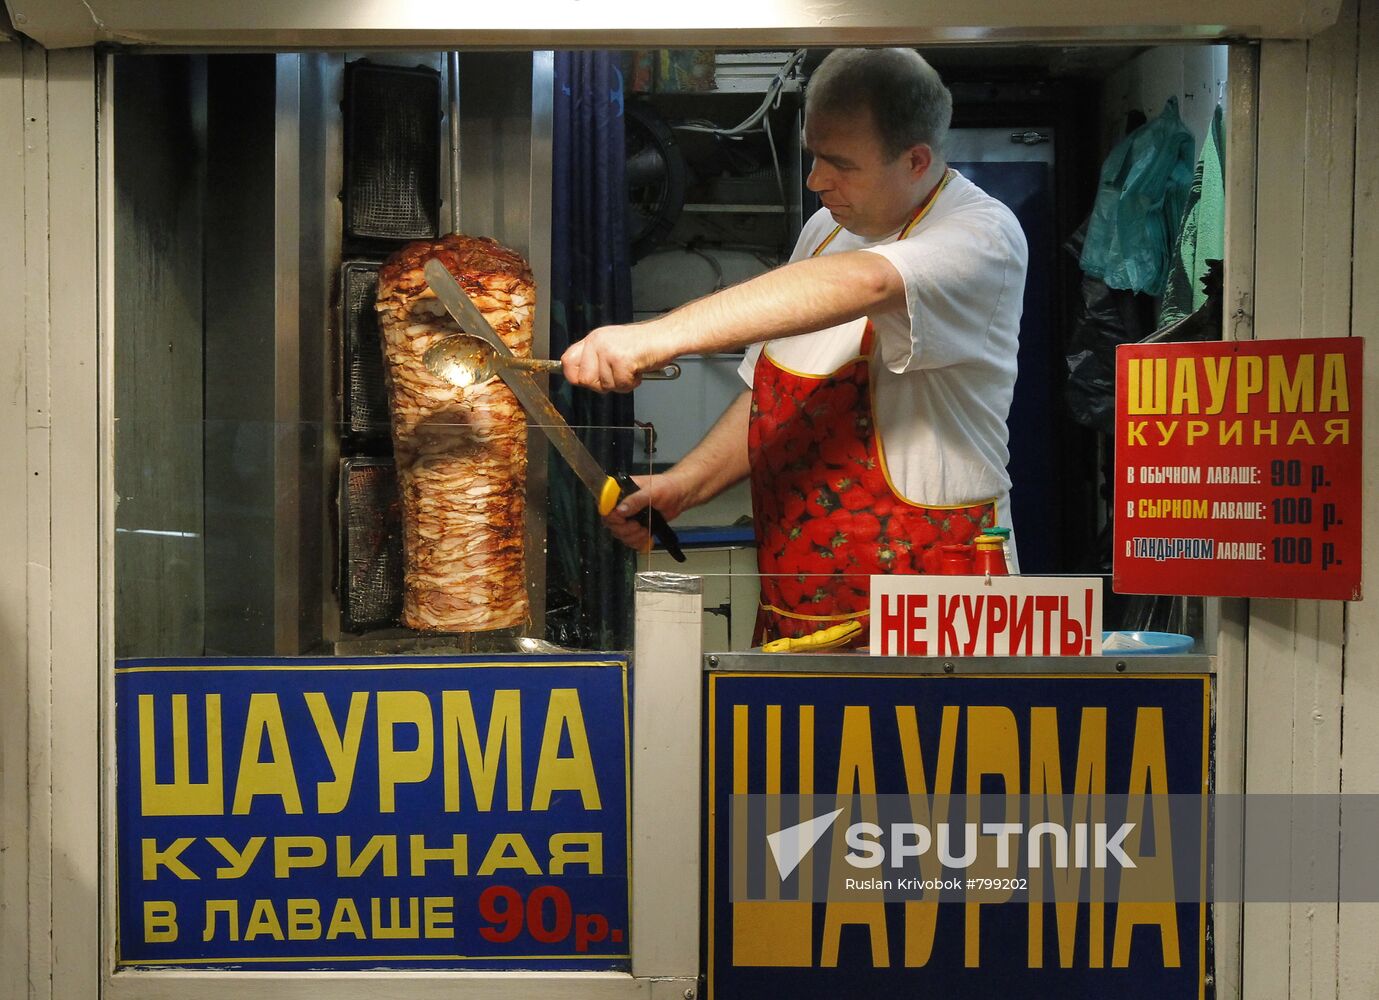 Vending kiosks outside Moscow metro stations